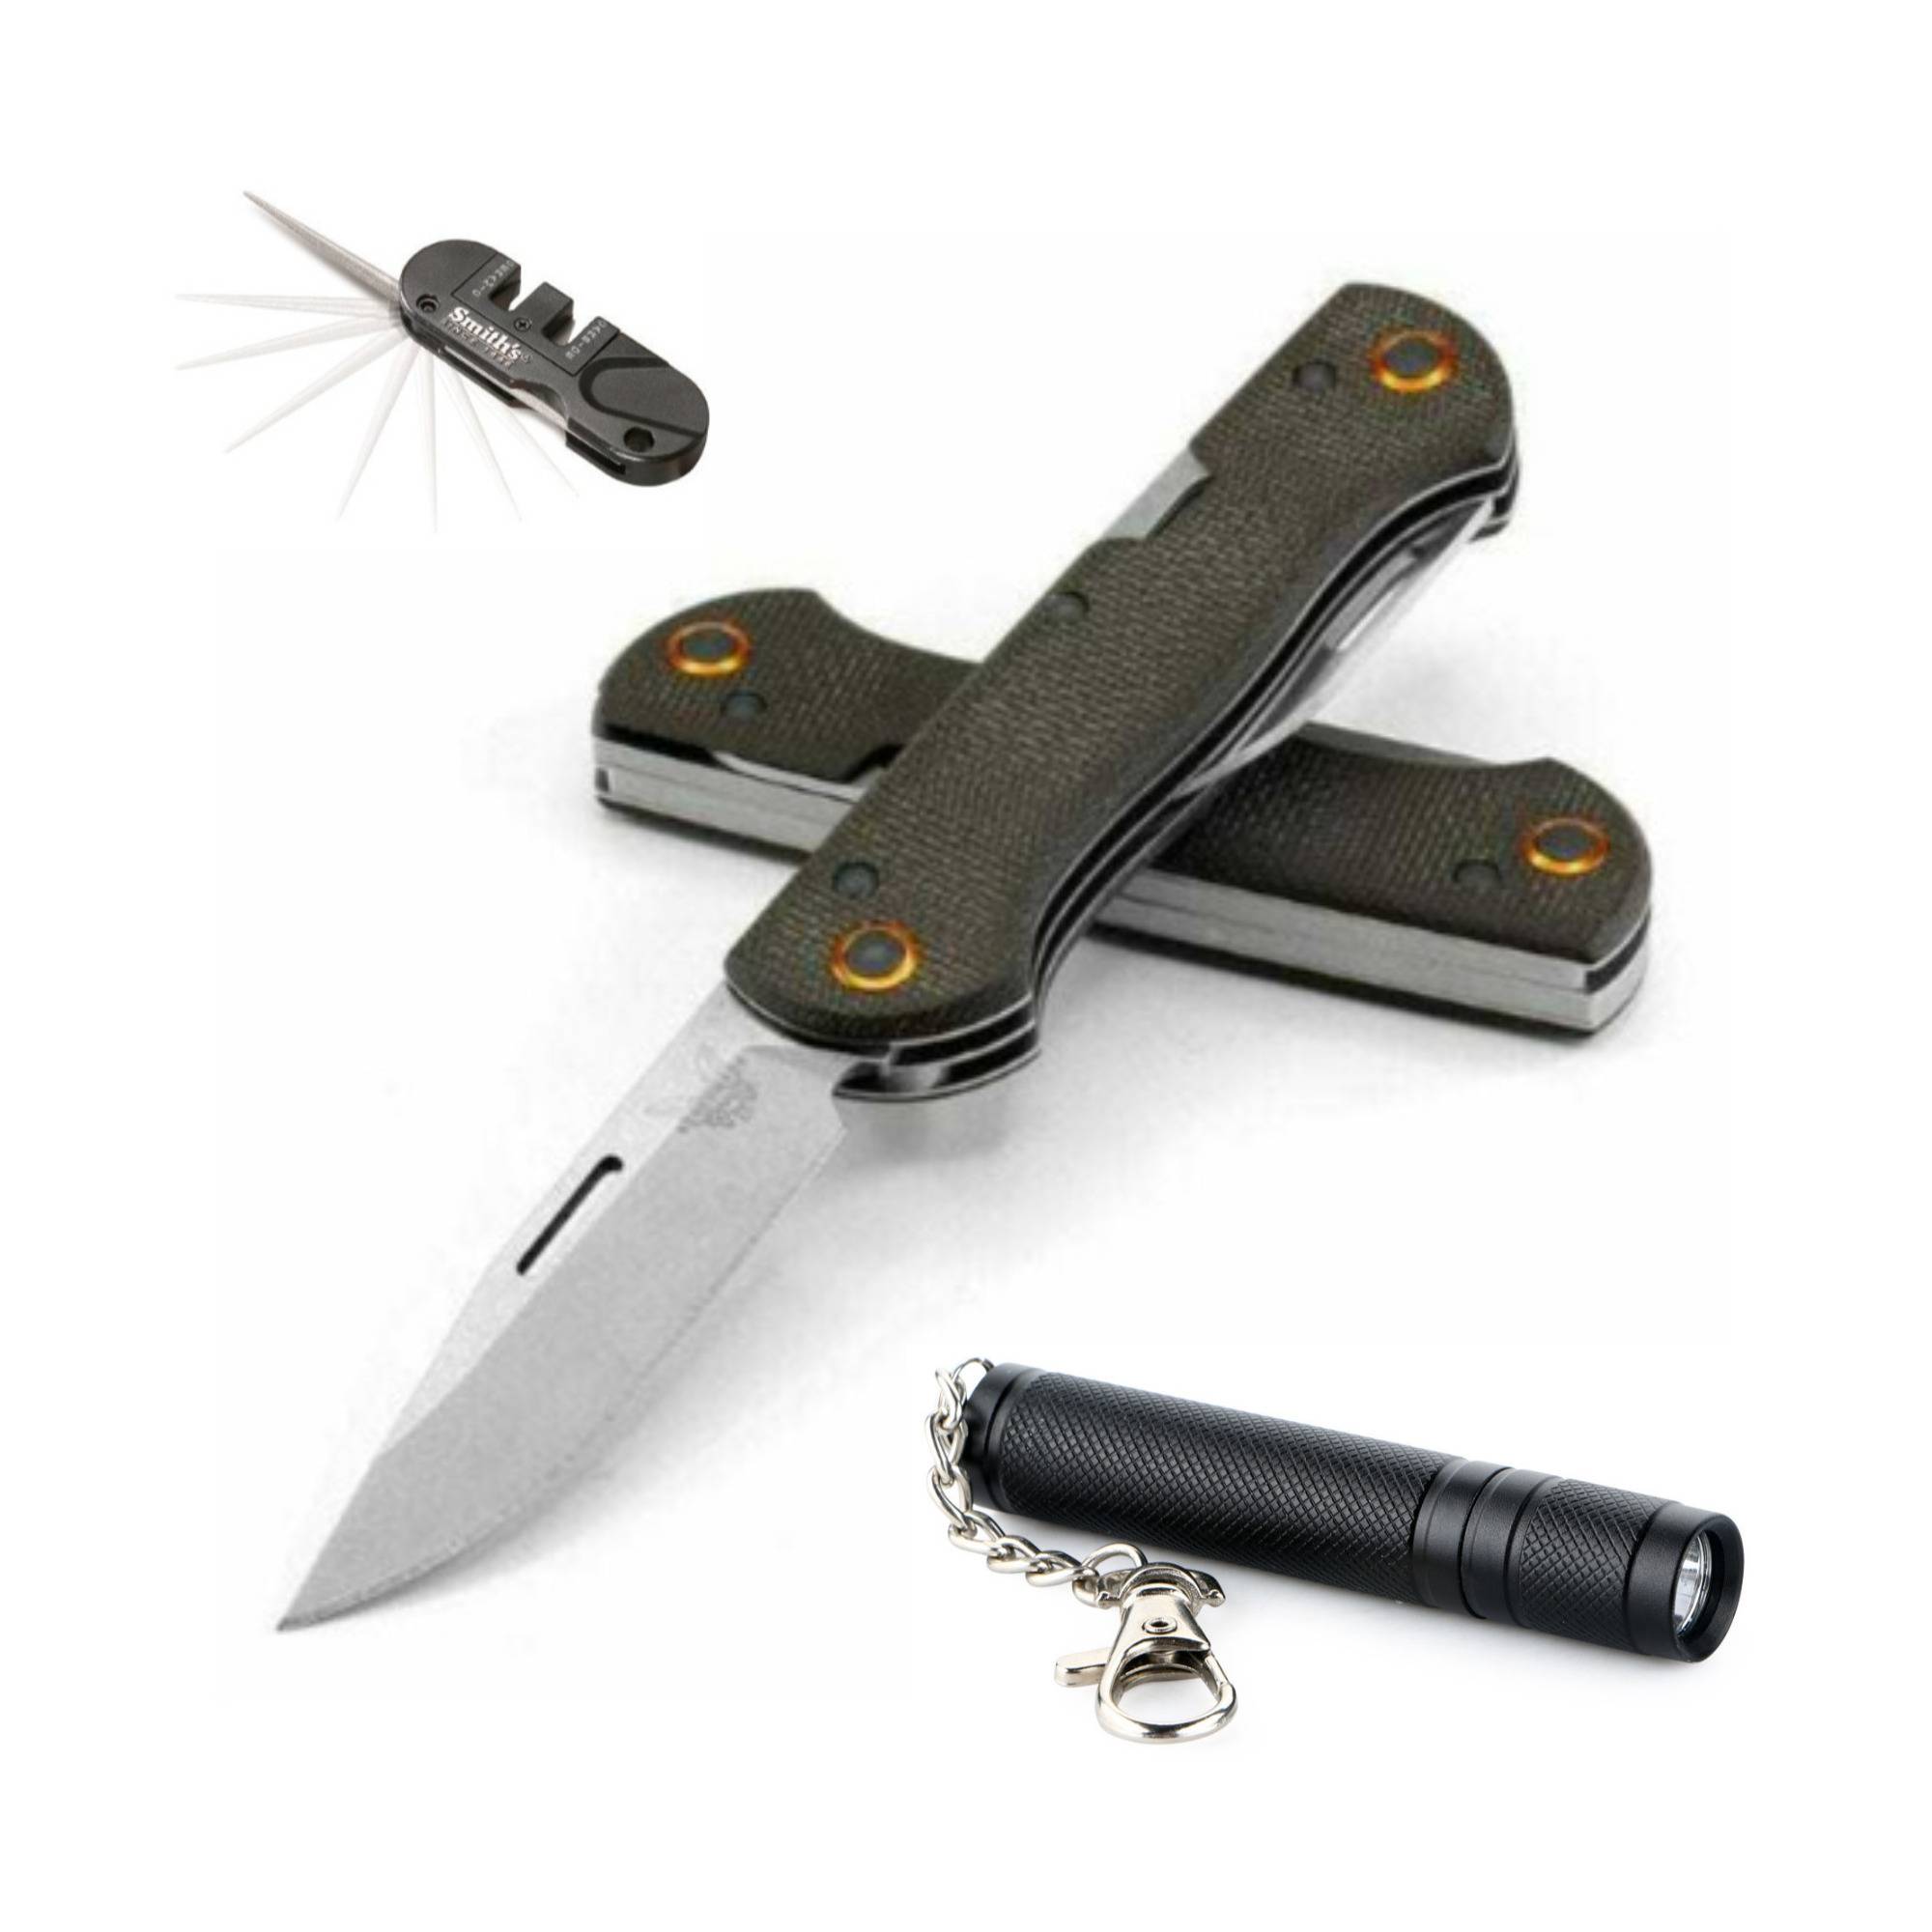 Benchmade 317-1 Weekender Pocket Knife with Manual Knife Sharpener & Flashlight